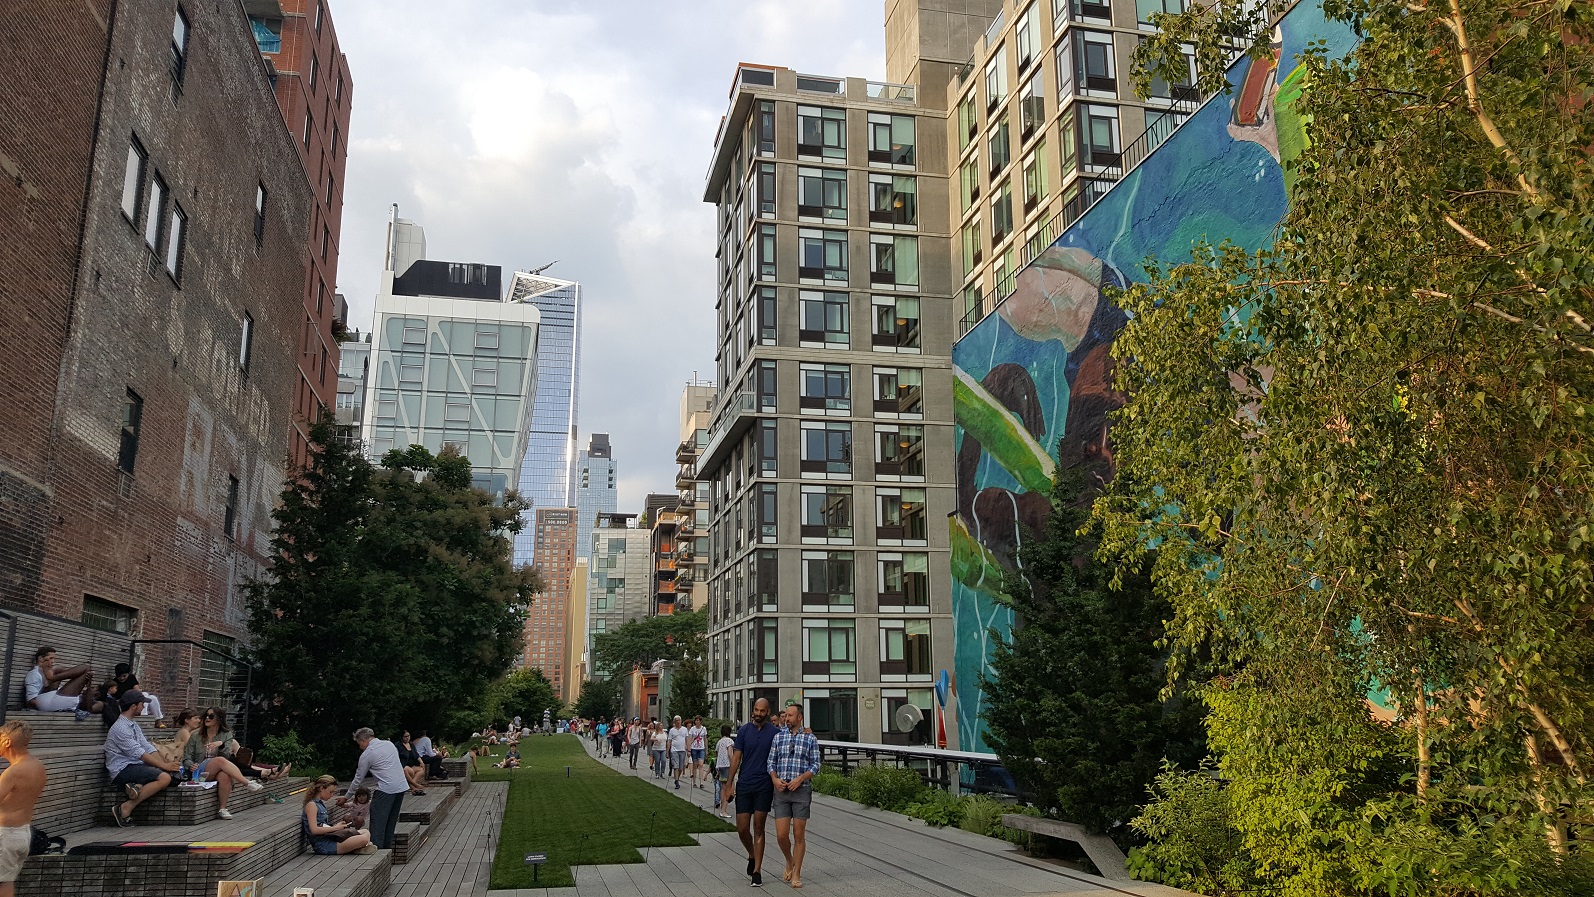 New Yorkers ontspannen zich tussen de muurschilderingen in het park.